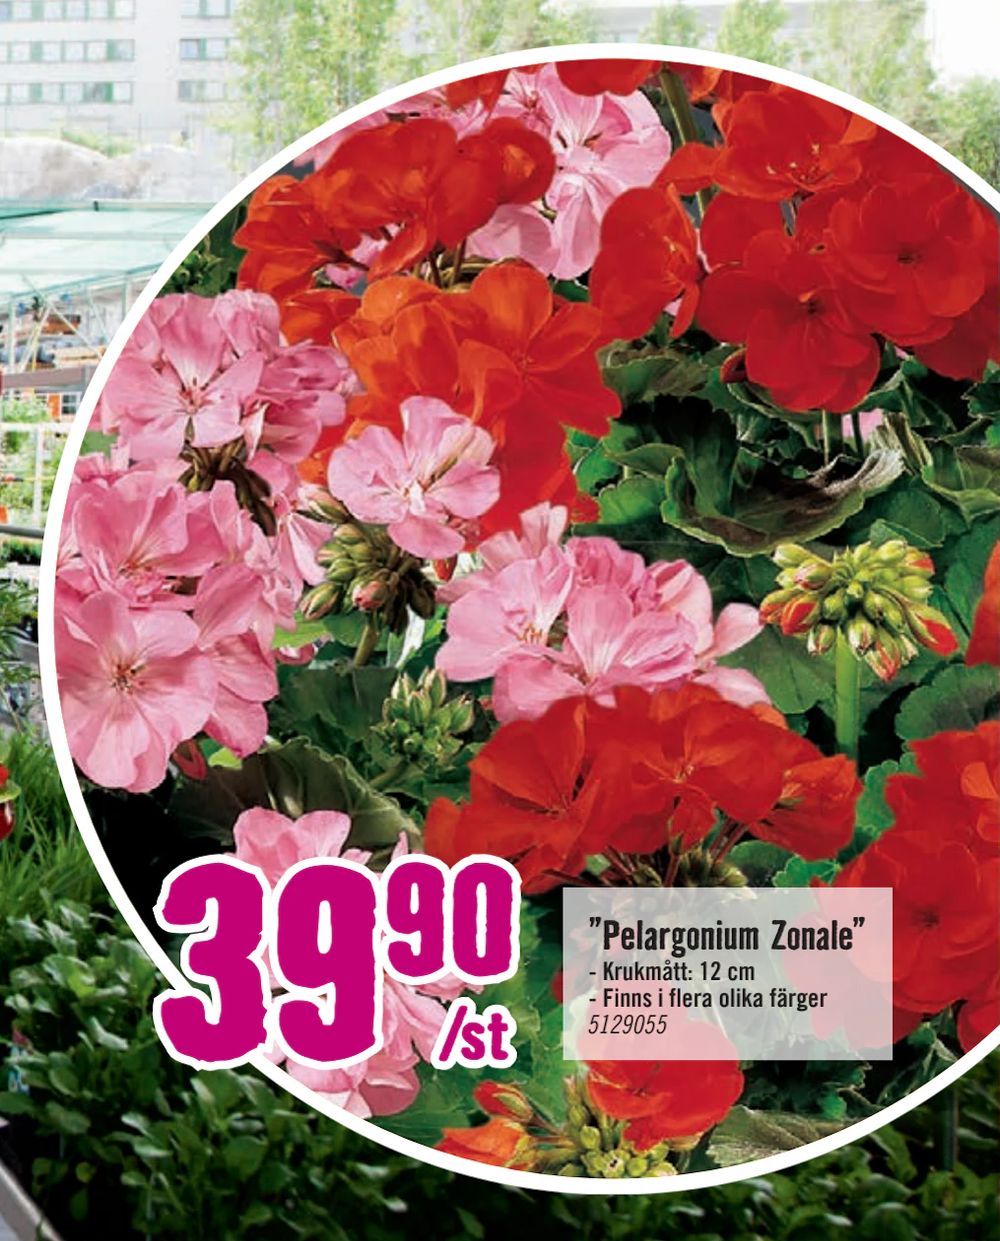 Erbjudanden på ”Pelargonium Zonale” från Hornbach för 39,90 kr